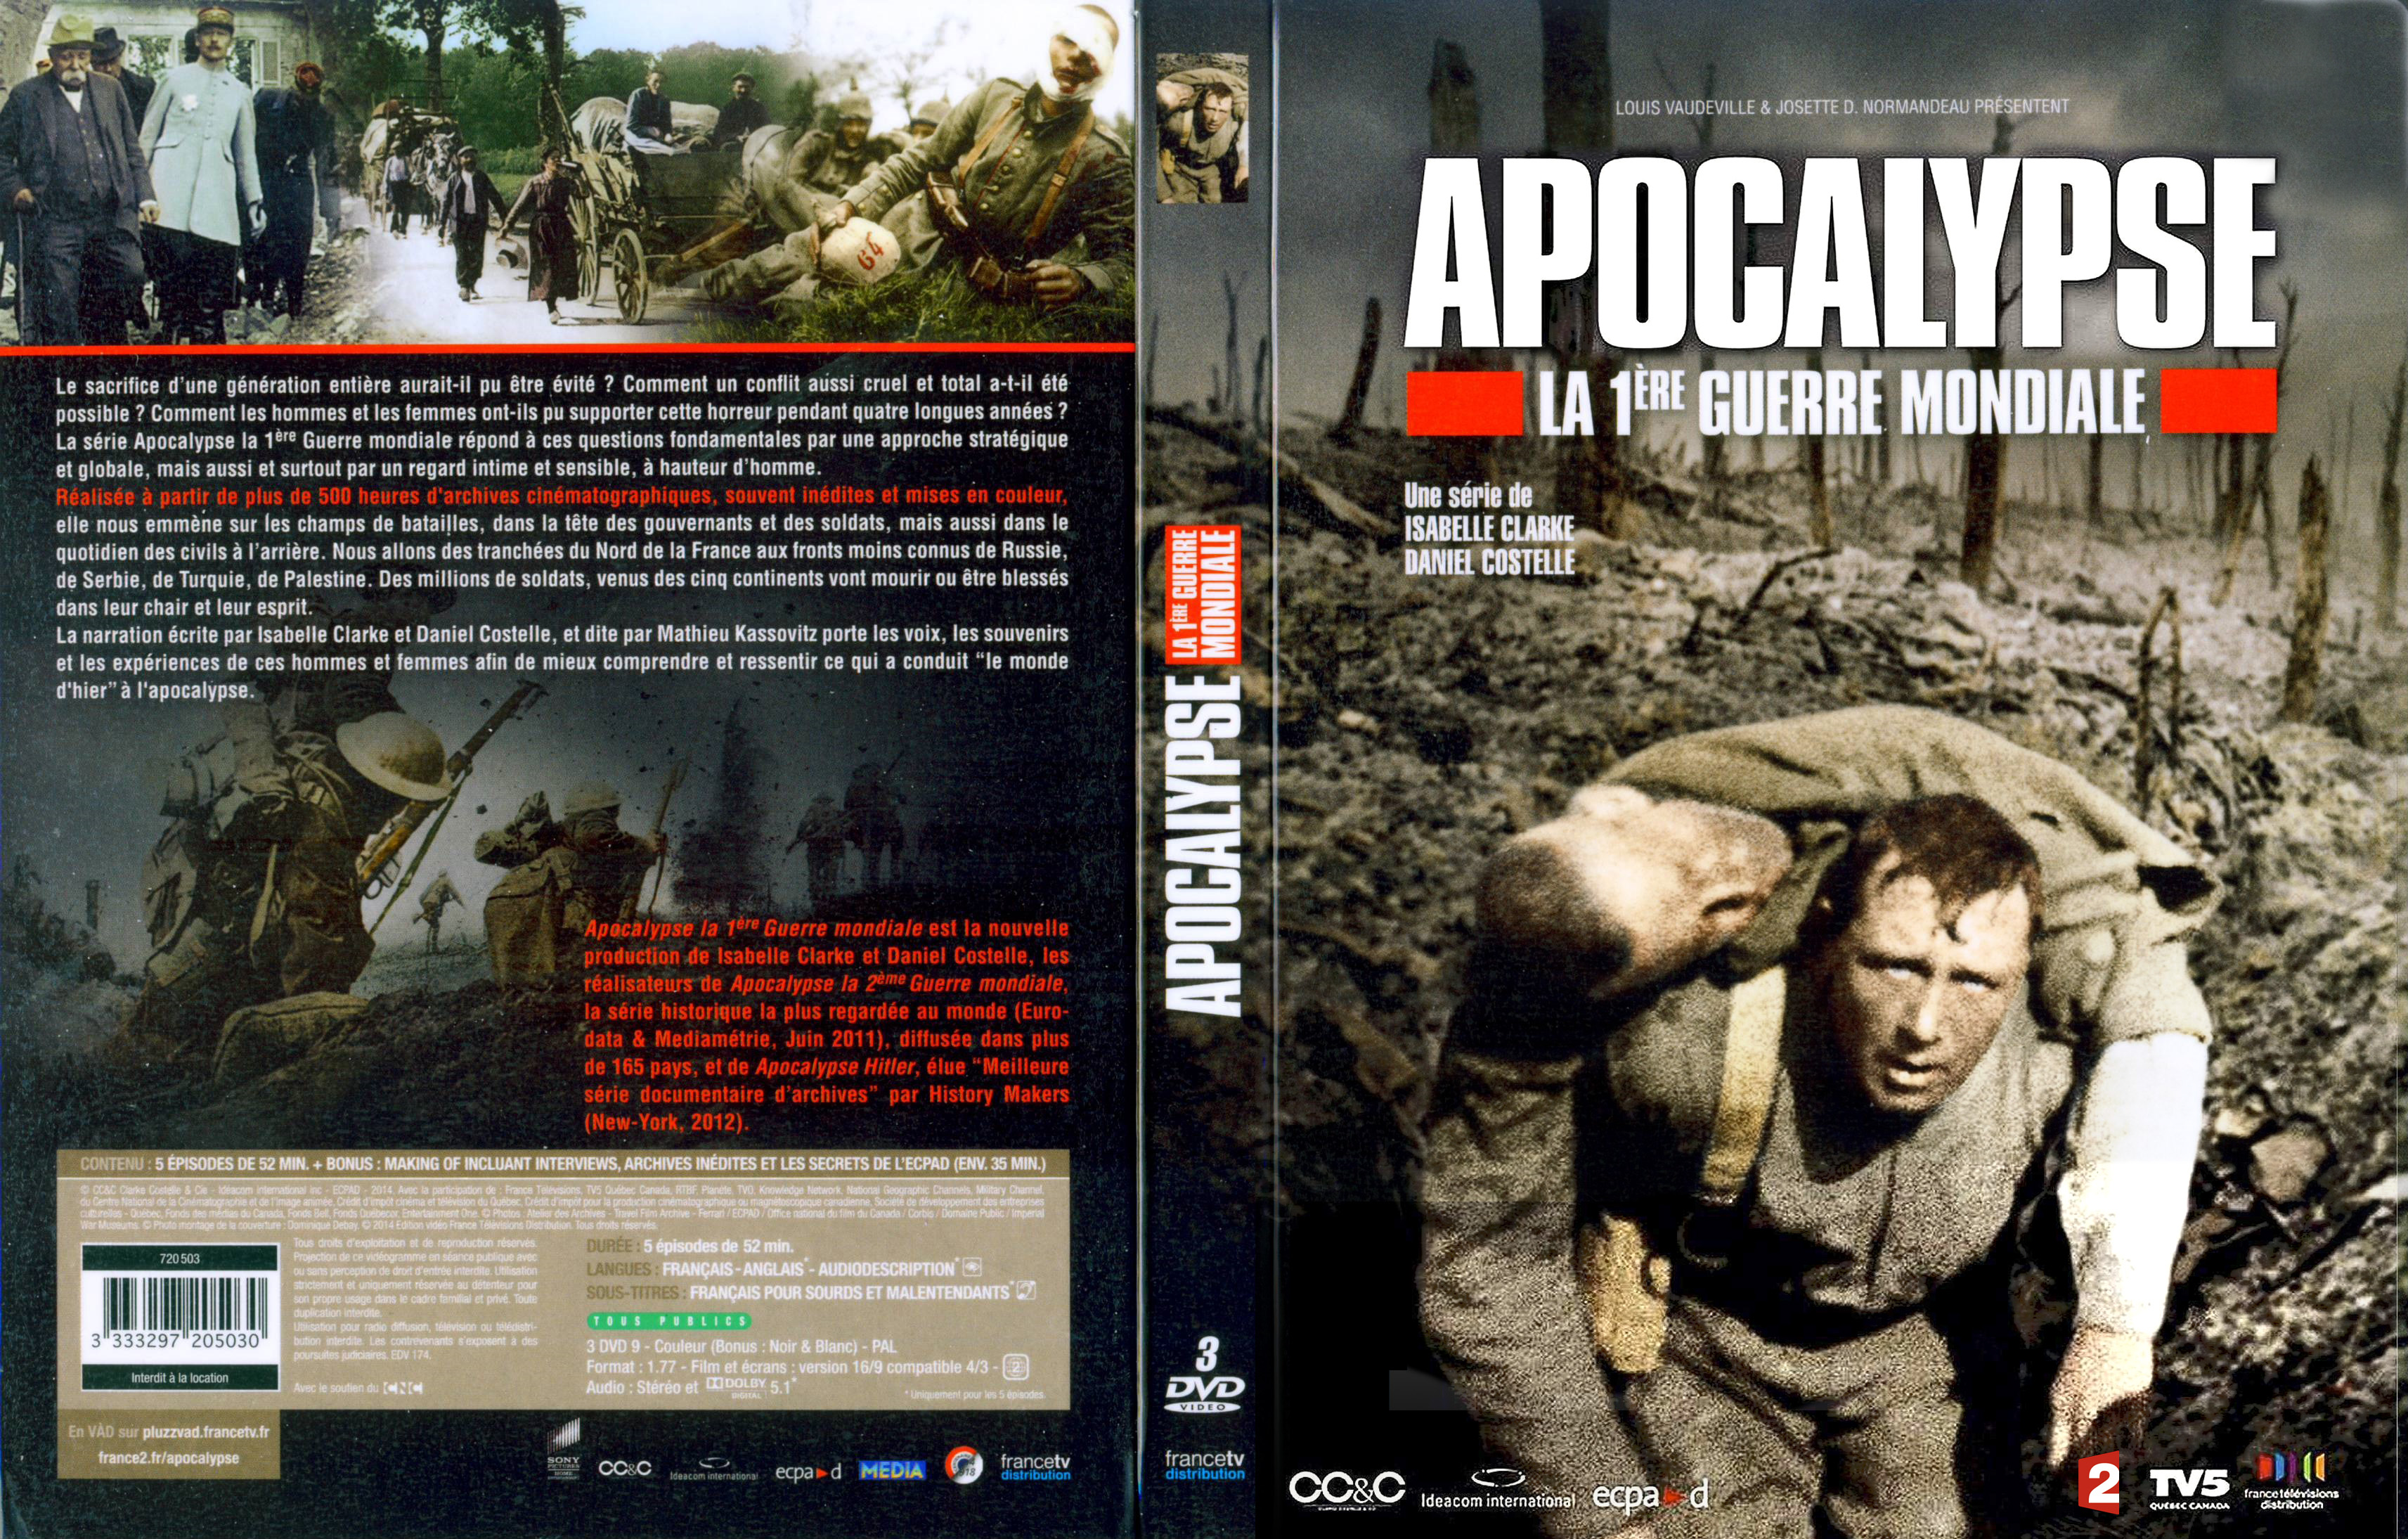 Jaquette DVD Apocalypse 1re guerre mondiale